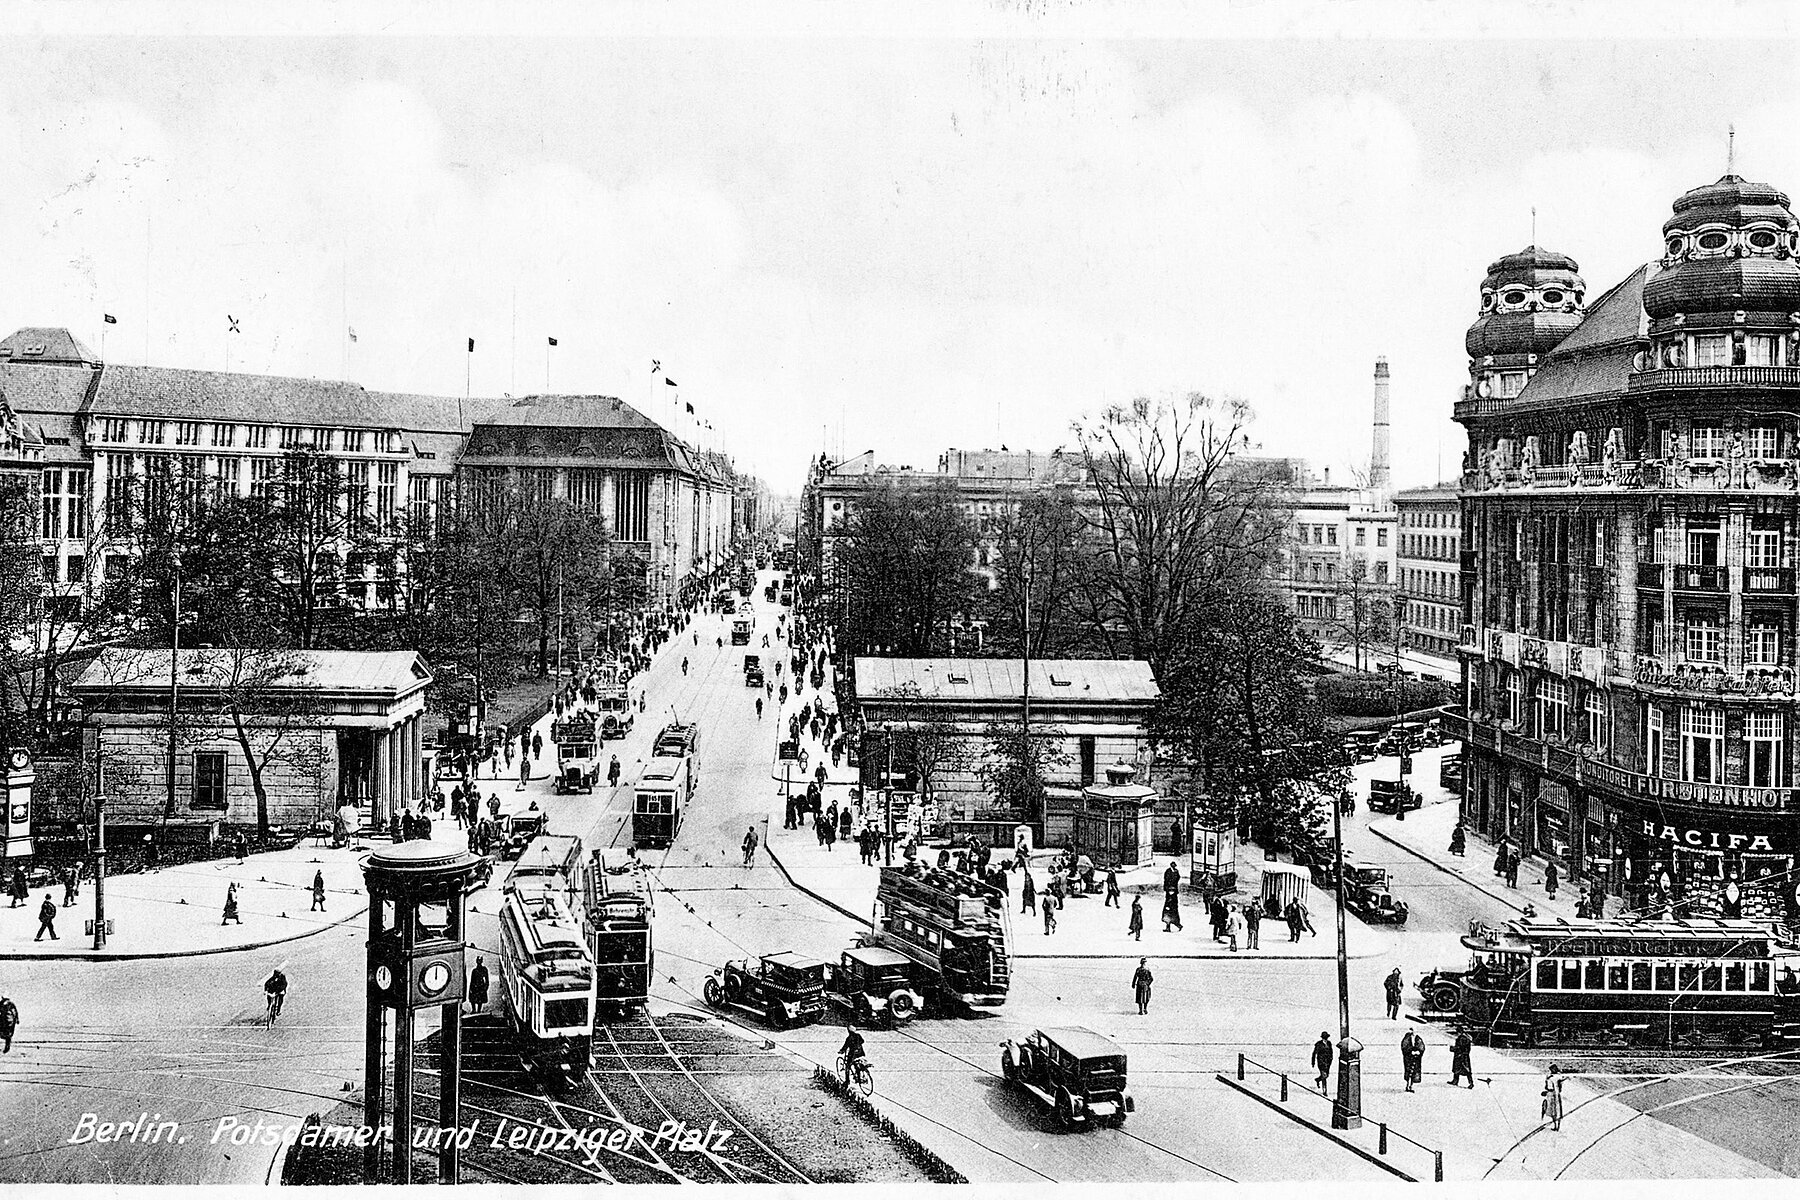 Historische Postkarte einer Straßenszene am Potsdamer Platz mit Ampel, Tramverkehr und Autos im Vordergrund, umliegend befinden sich diverse Gebäude.